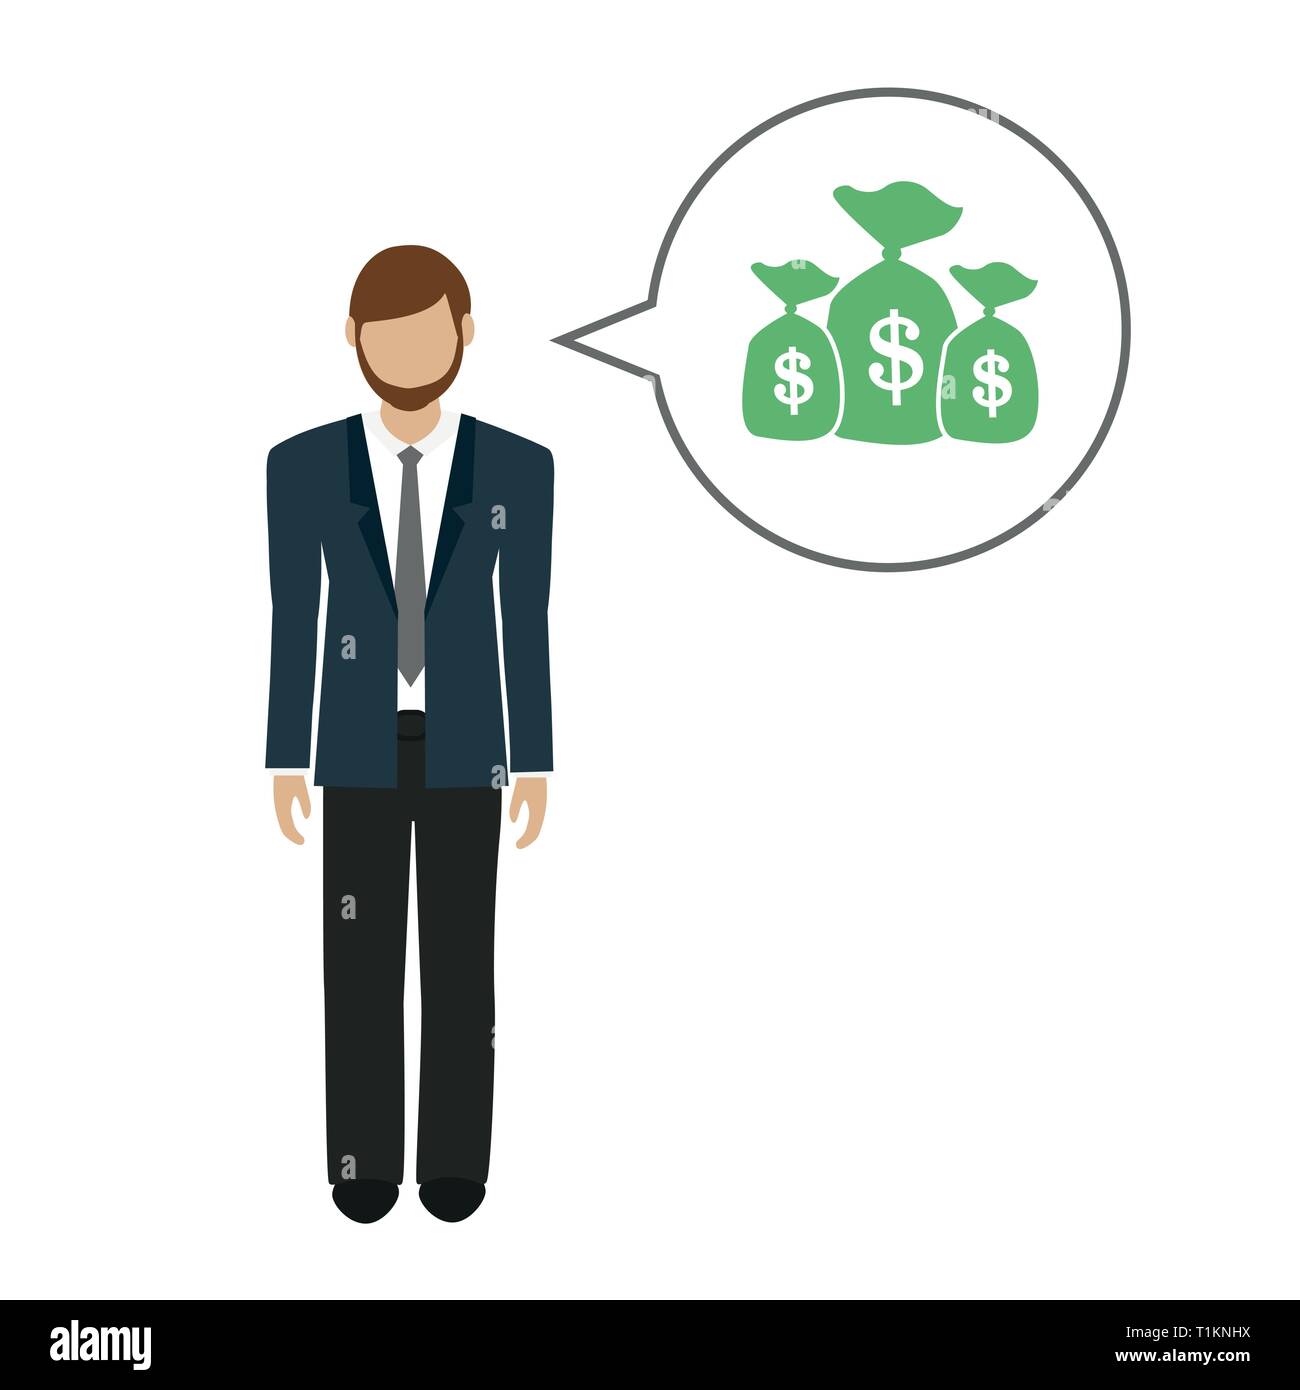 Business mann Charakter spricht über Geld dollar Vektor-illustration EPS 10. Stock Vektor